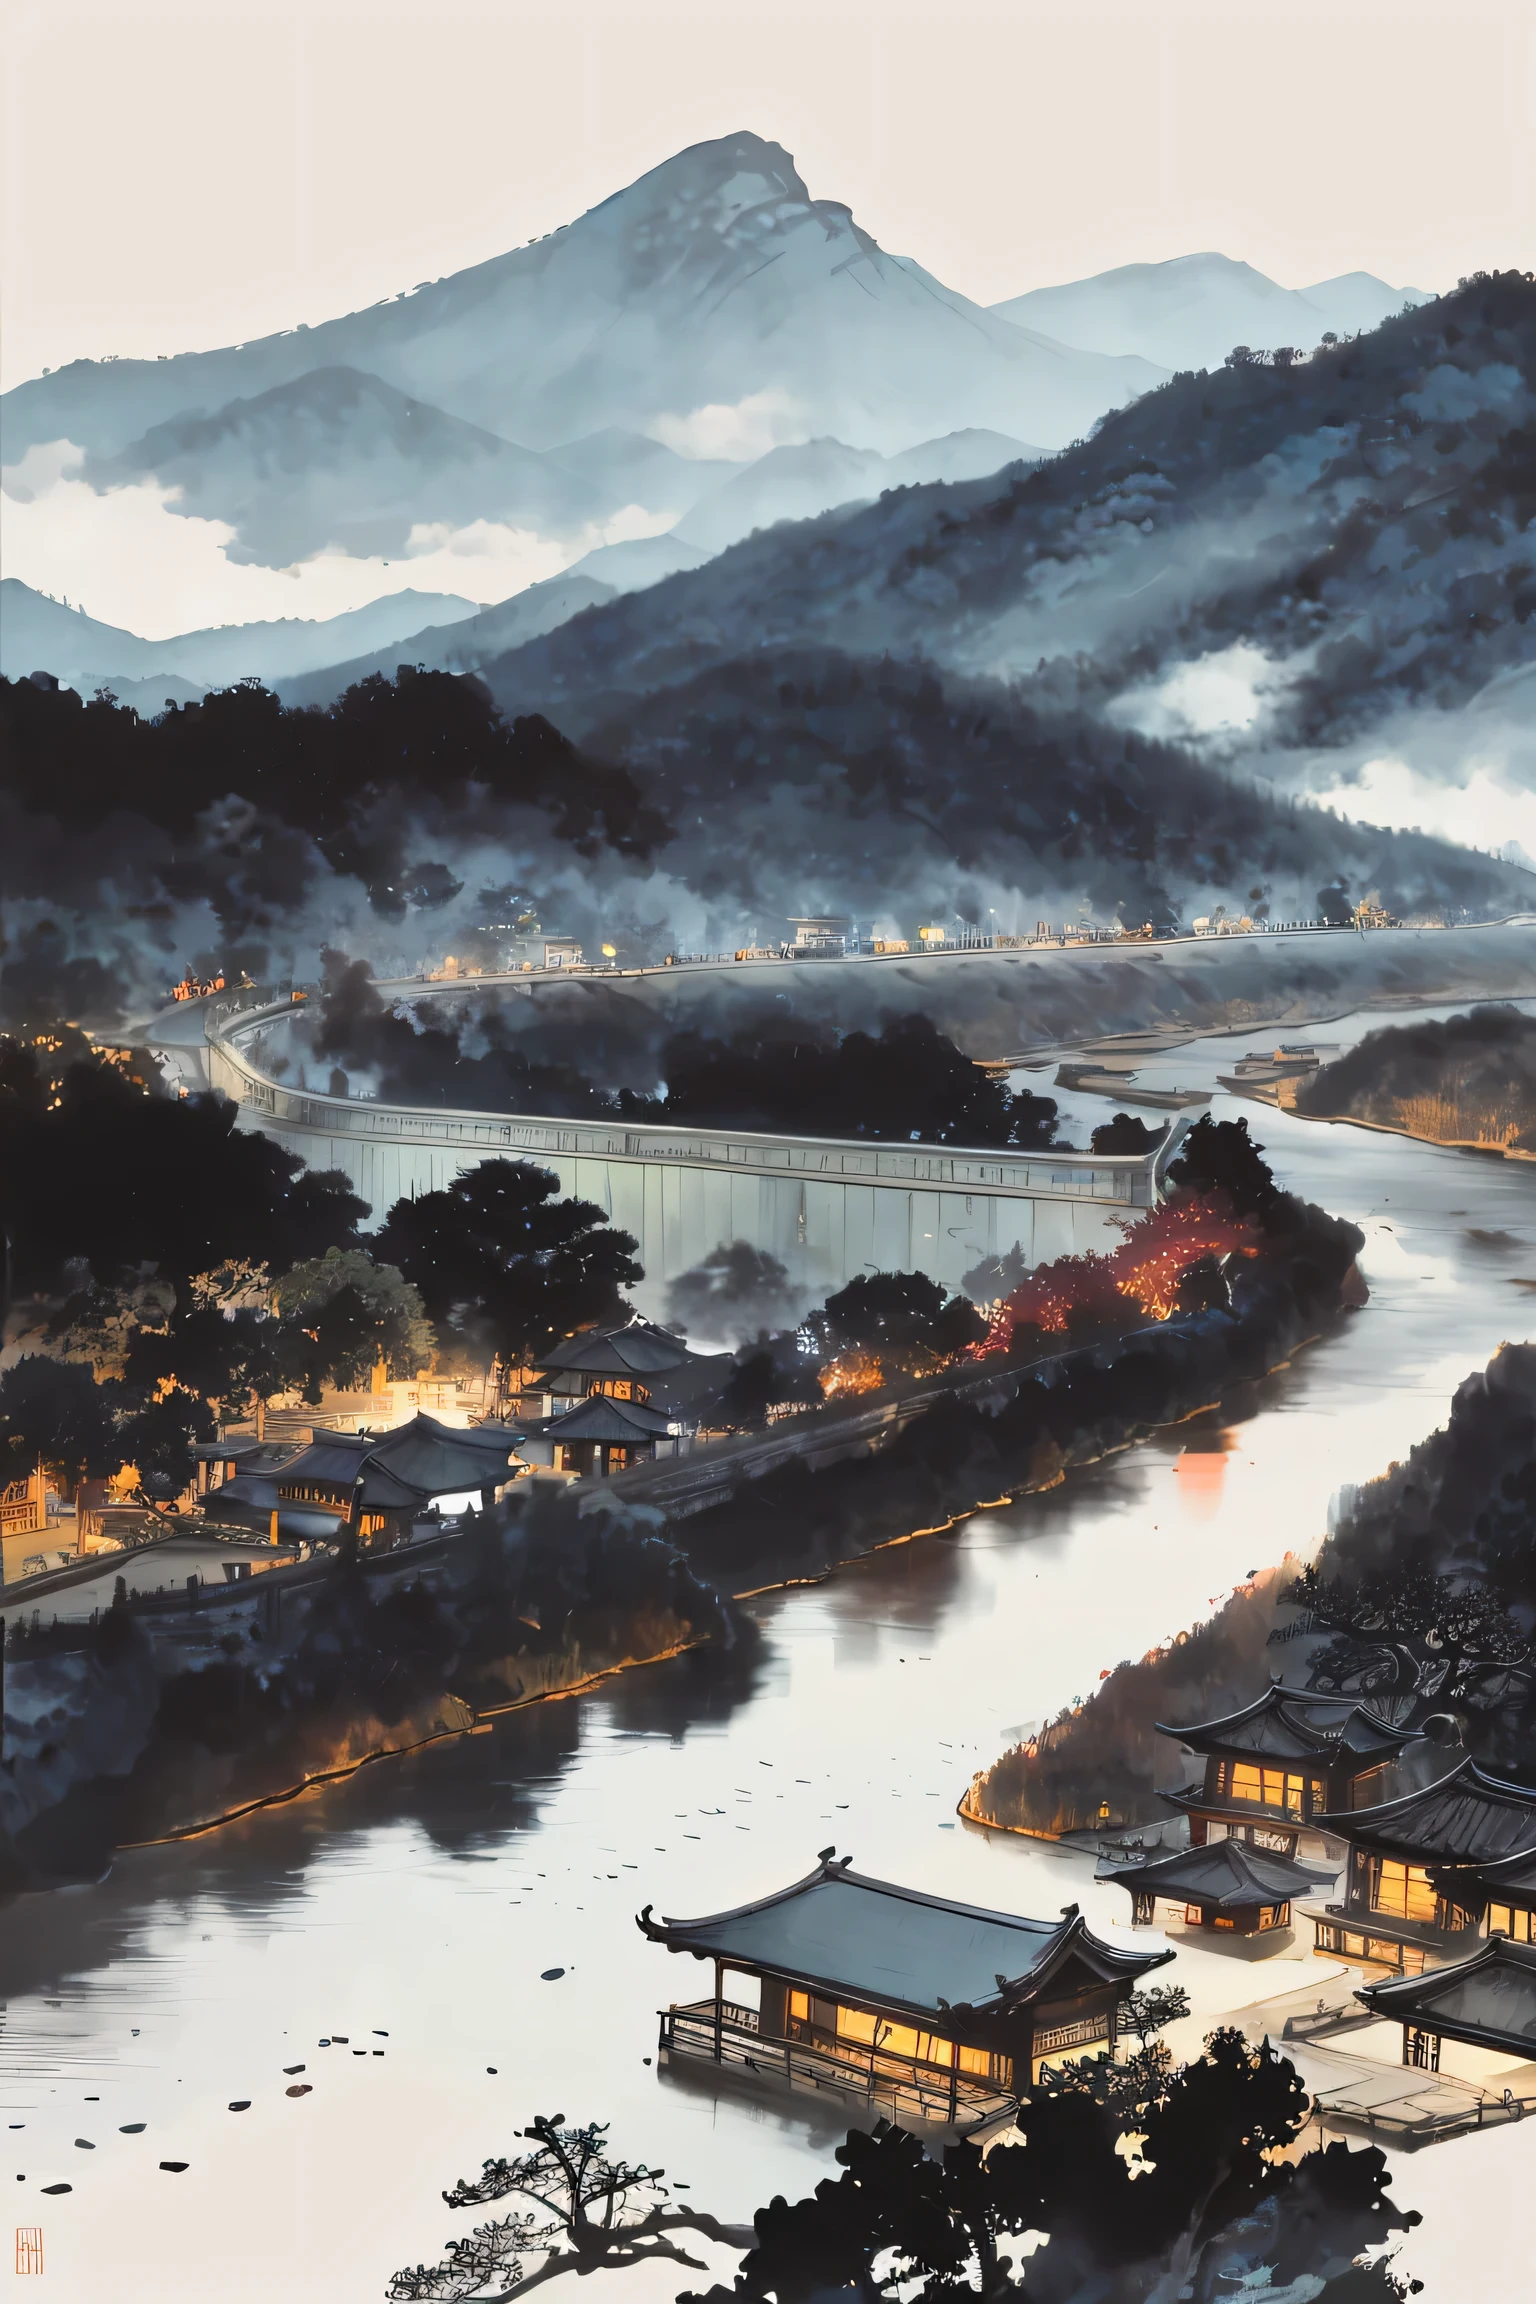 ミックスプラグインレイアウト, By Yoshitaka Amano, デジタルアートと絵画に非常に熟練した (Yoshitaka Amano) 丁寧に作られた. この作品はArtStationで人気があります，Unreal Engineと互換性があります. この風景には伝統的な中国の建築的特徴が見られる，都市の景観は深い森のようだ, 雄大な山々を背景にした，流れる水と微妙な要素.